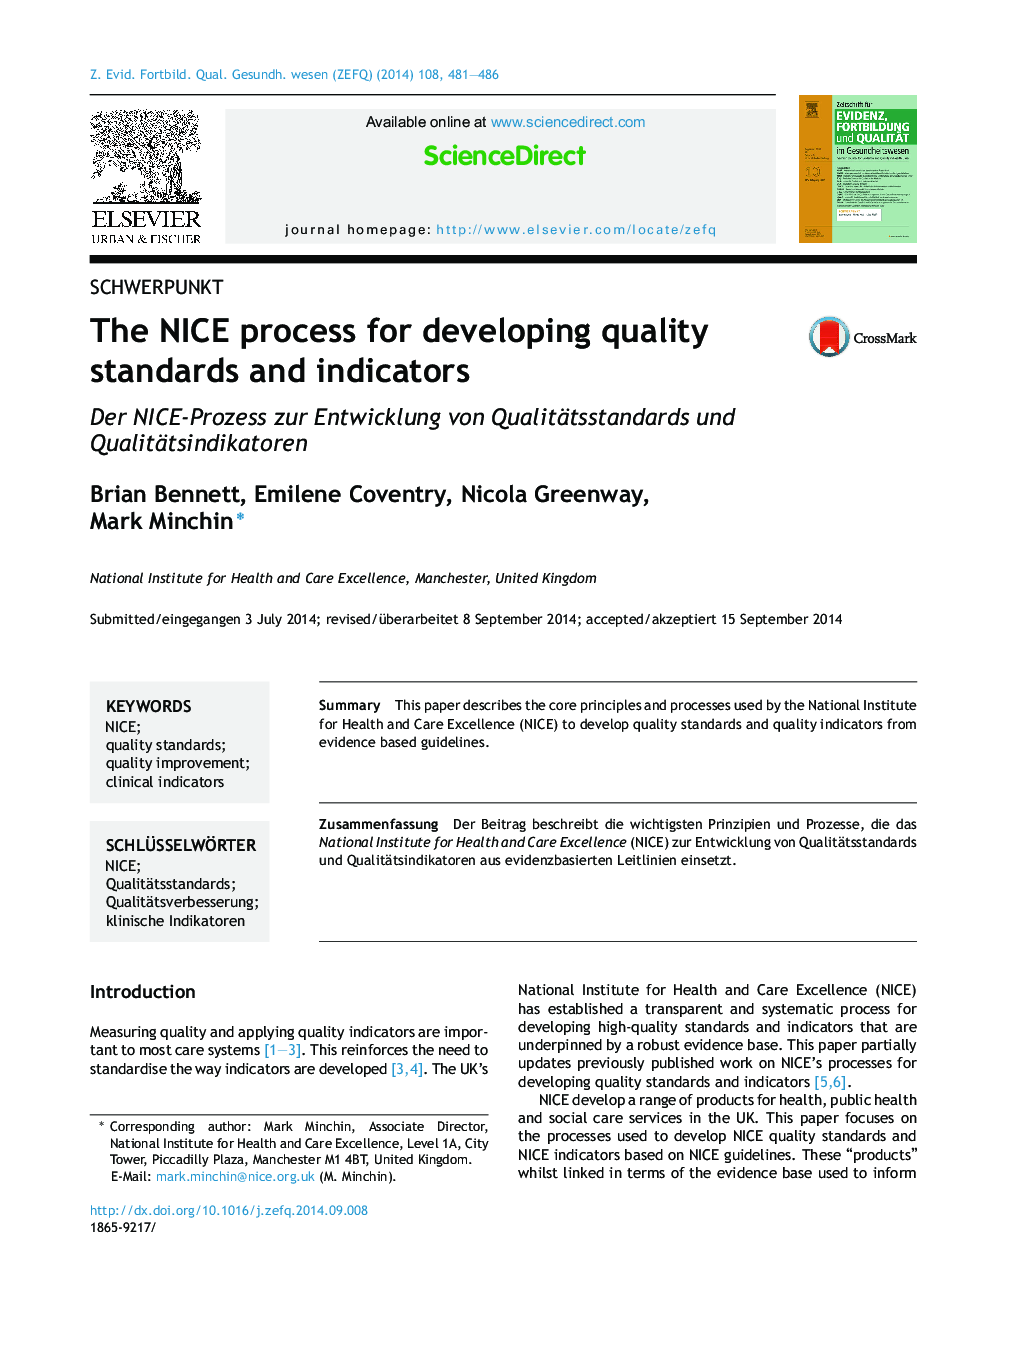 روند NICE برای توسعه استانداردها و شاخص های کیفیت